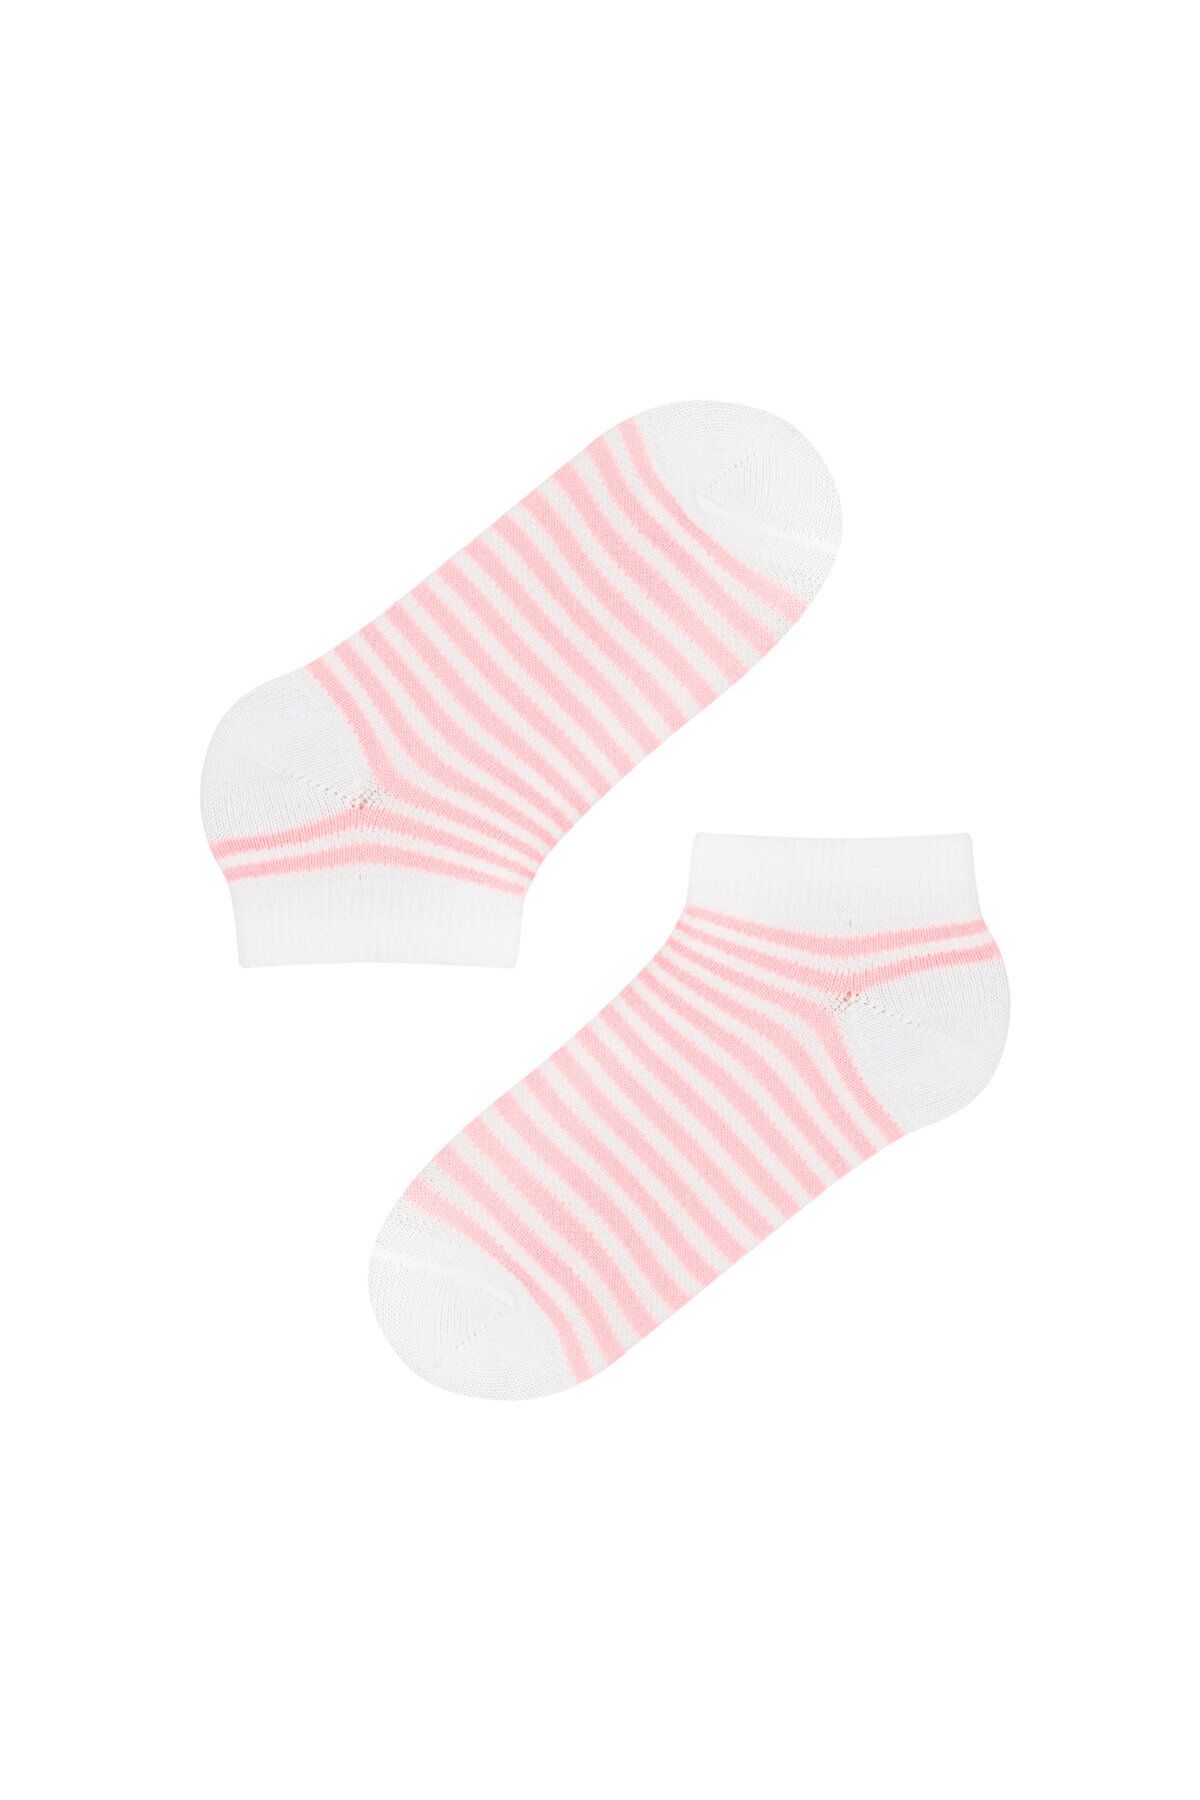 Penti Kız Çocuk Core 4lü Patik Çorap